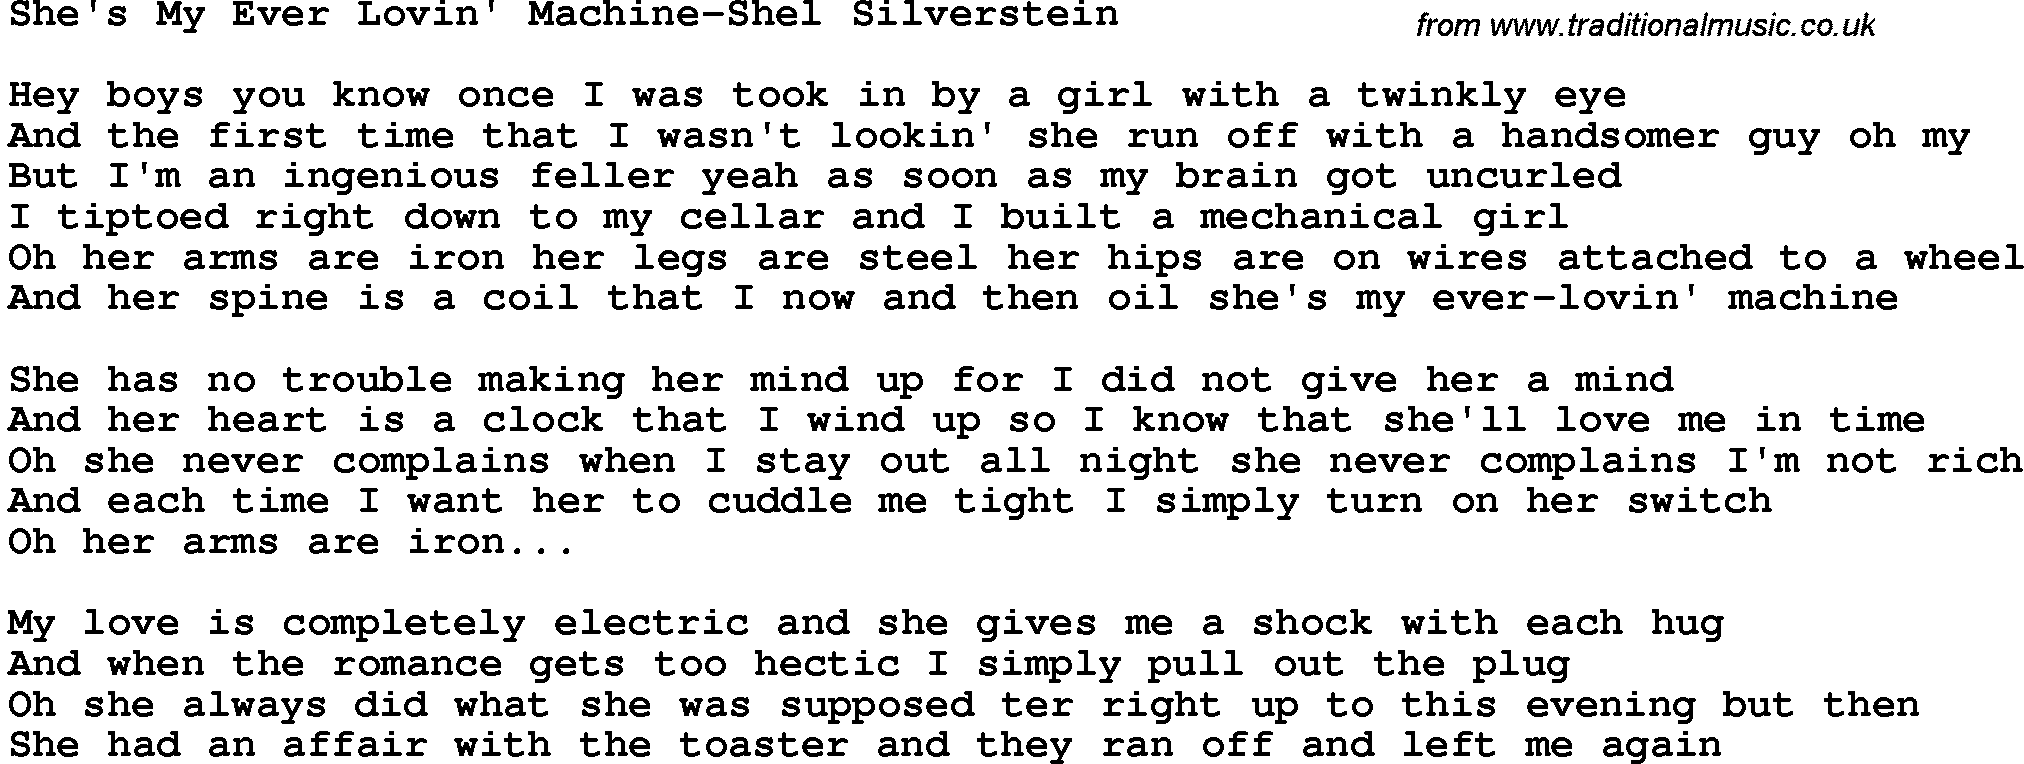 Novelty song: She's My Ever Lovin' Machine-Shel Silverstein lyrics